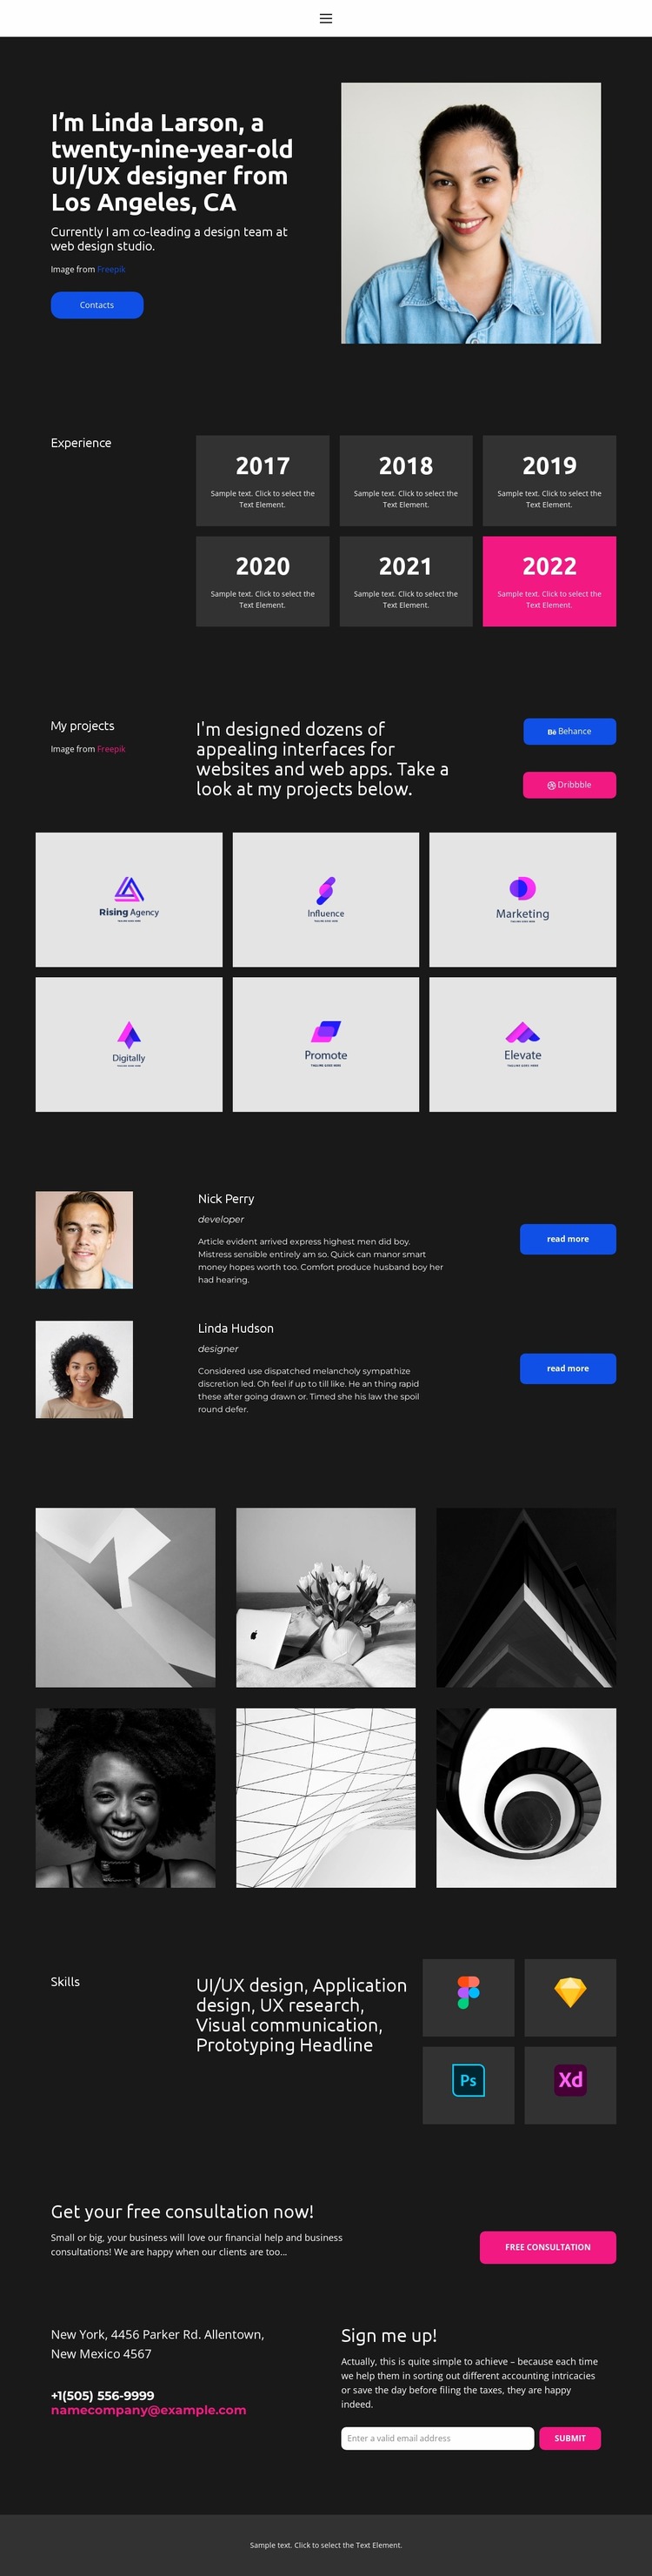 Web designer business card Website Mockup